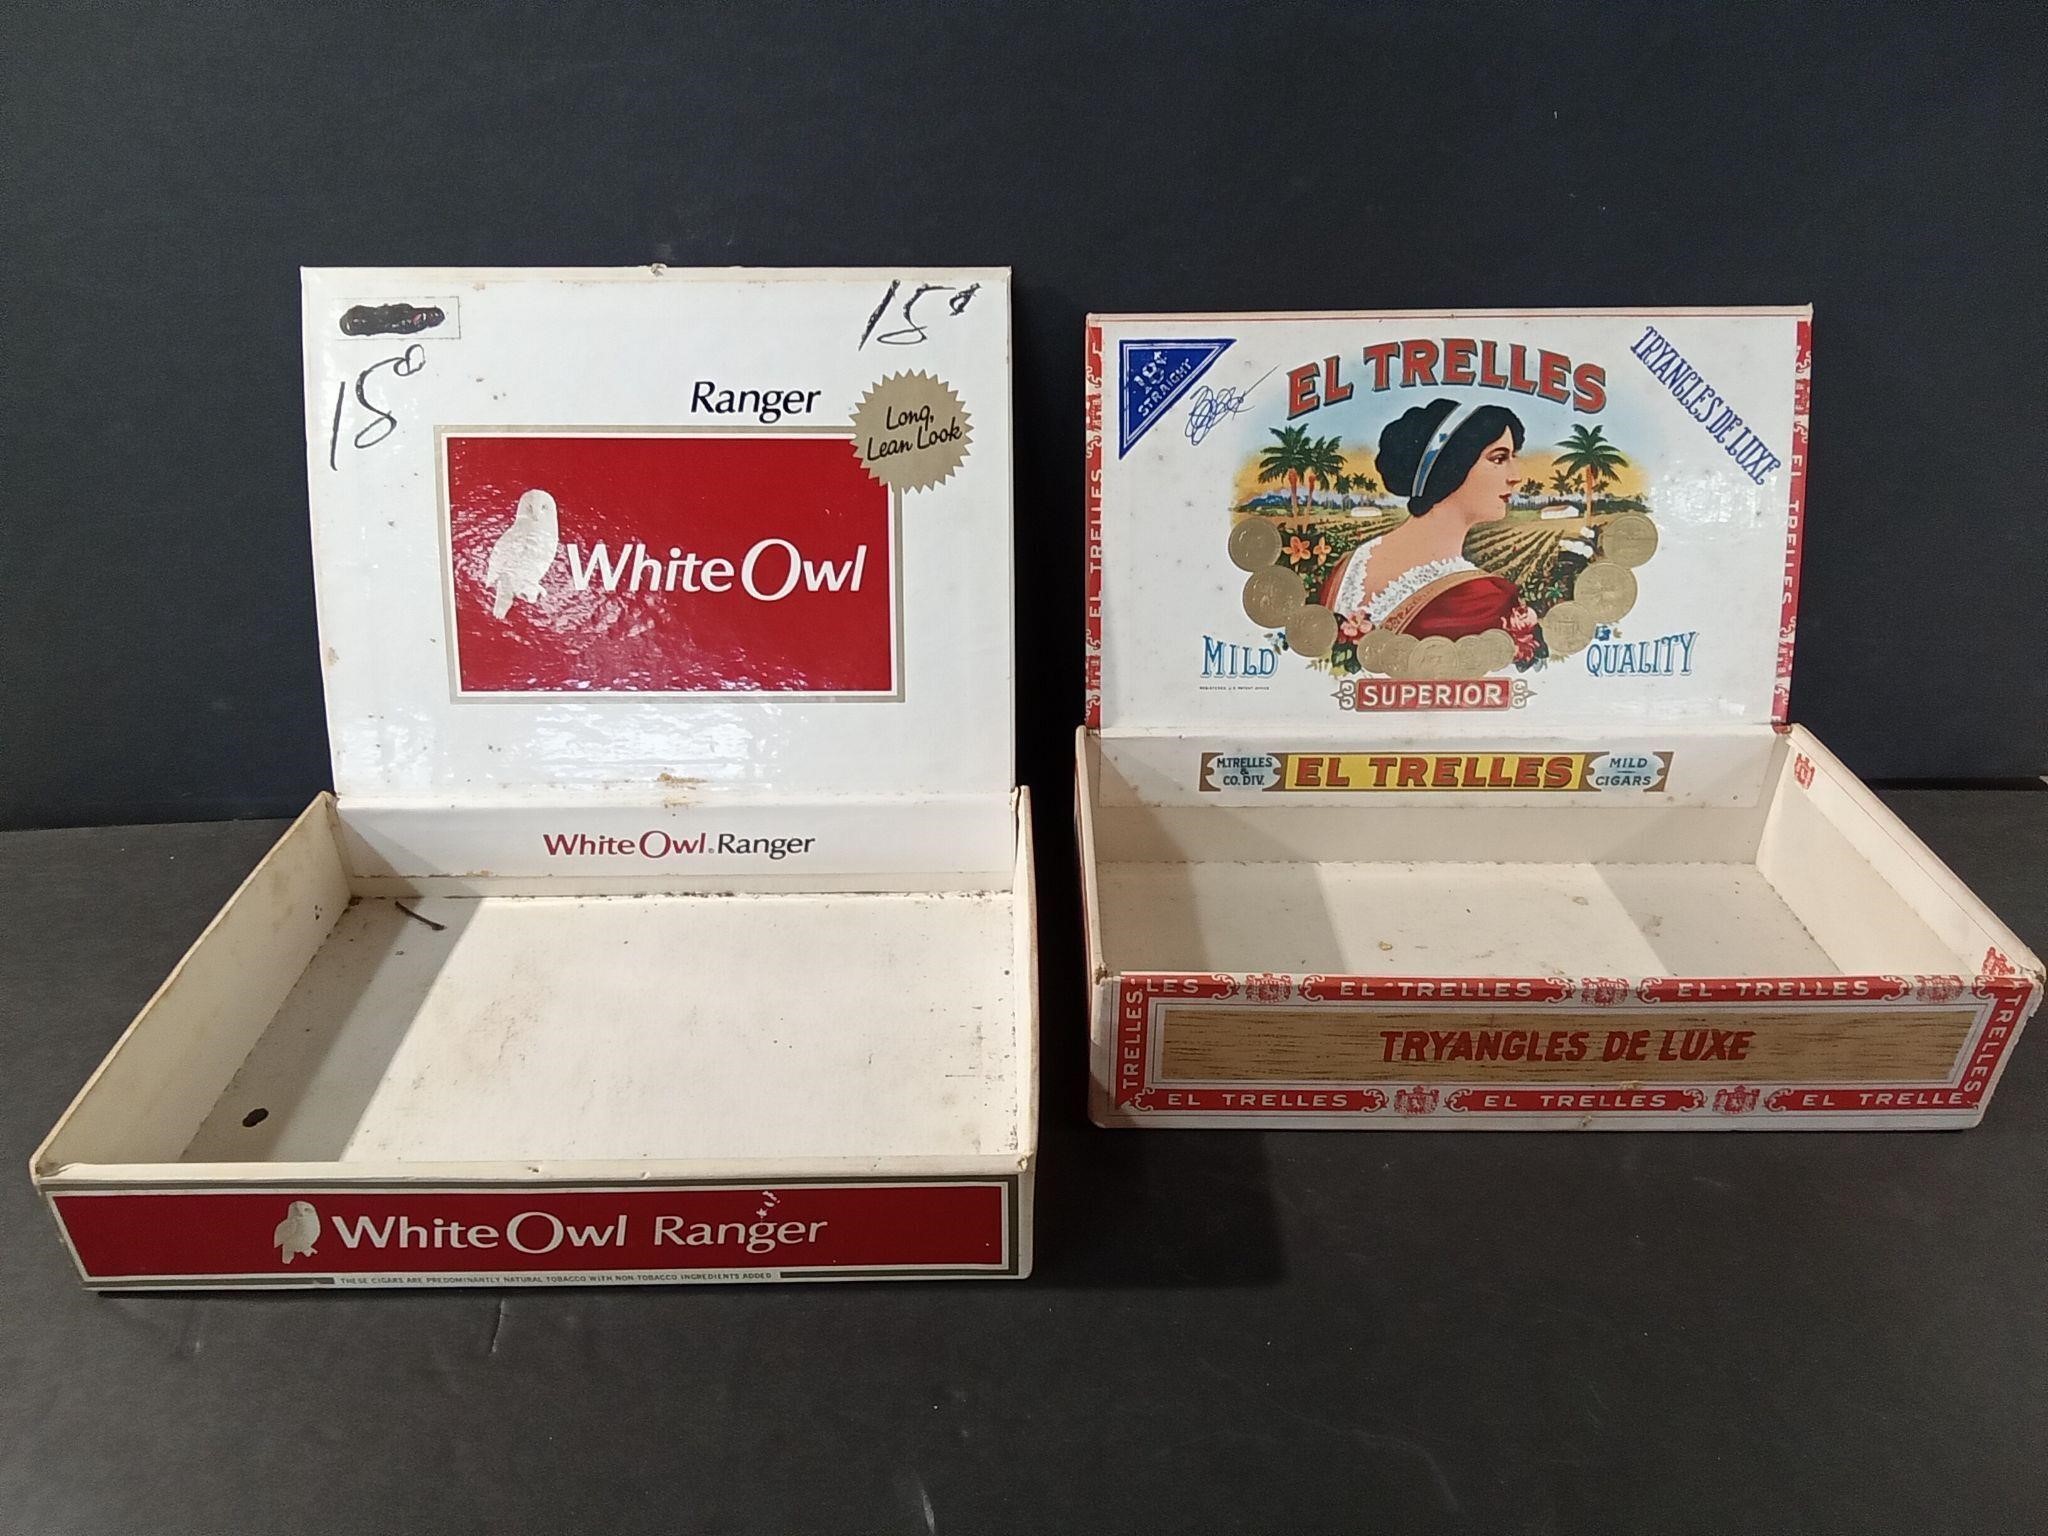 2 Cigar Boxes